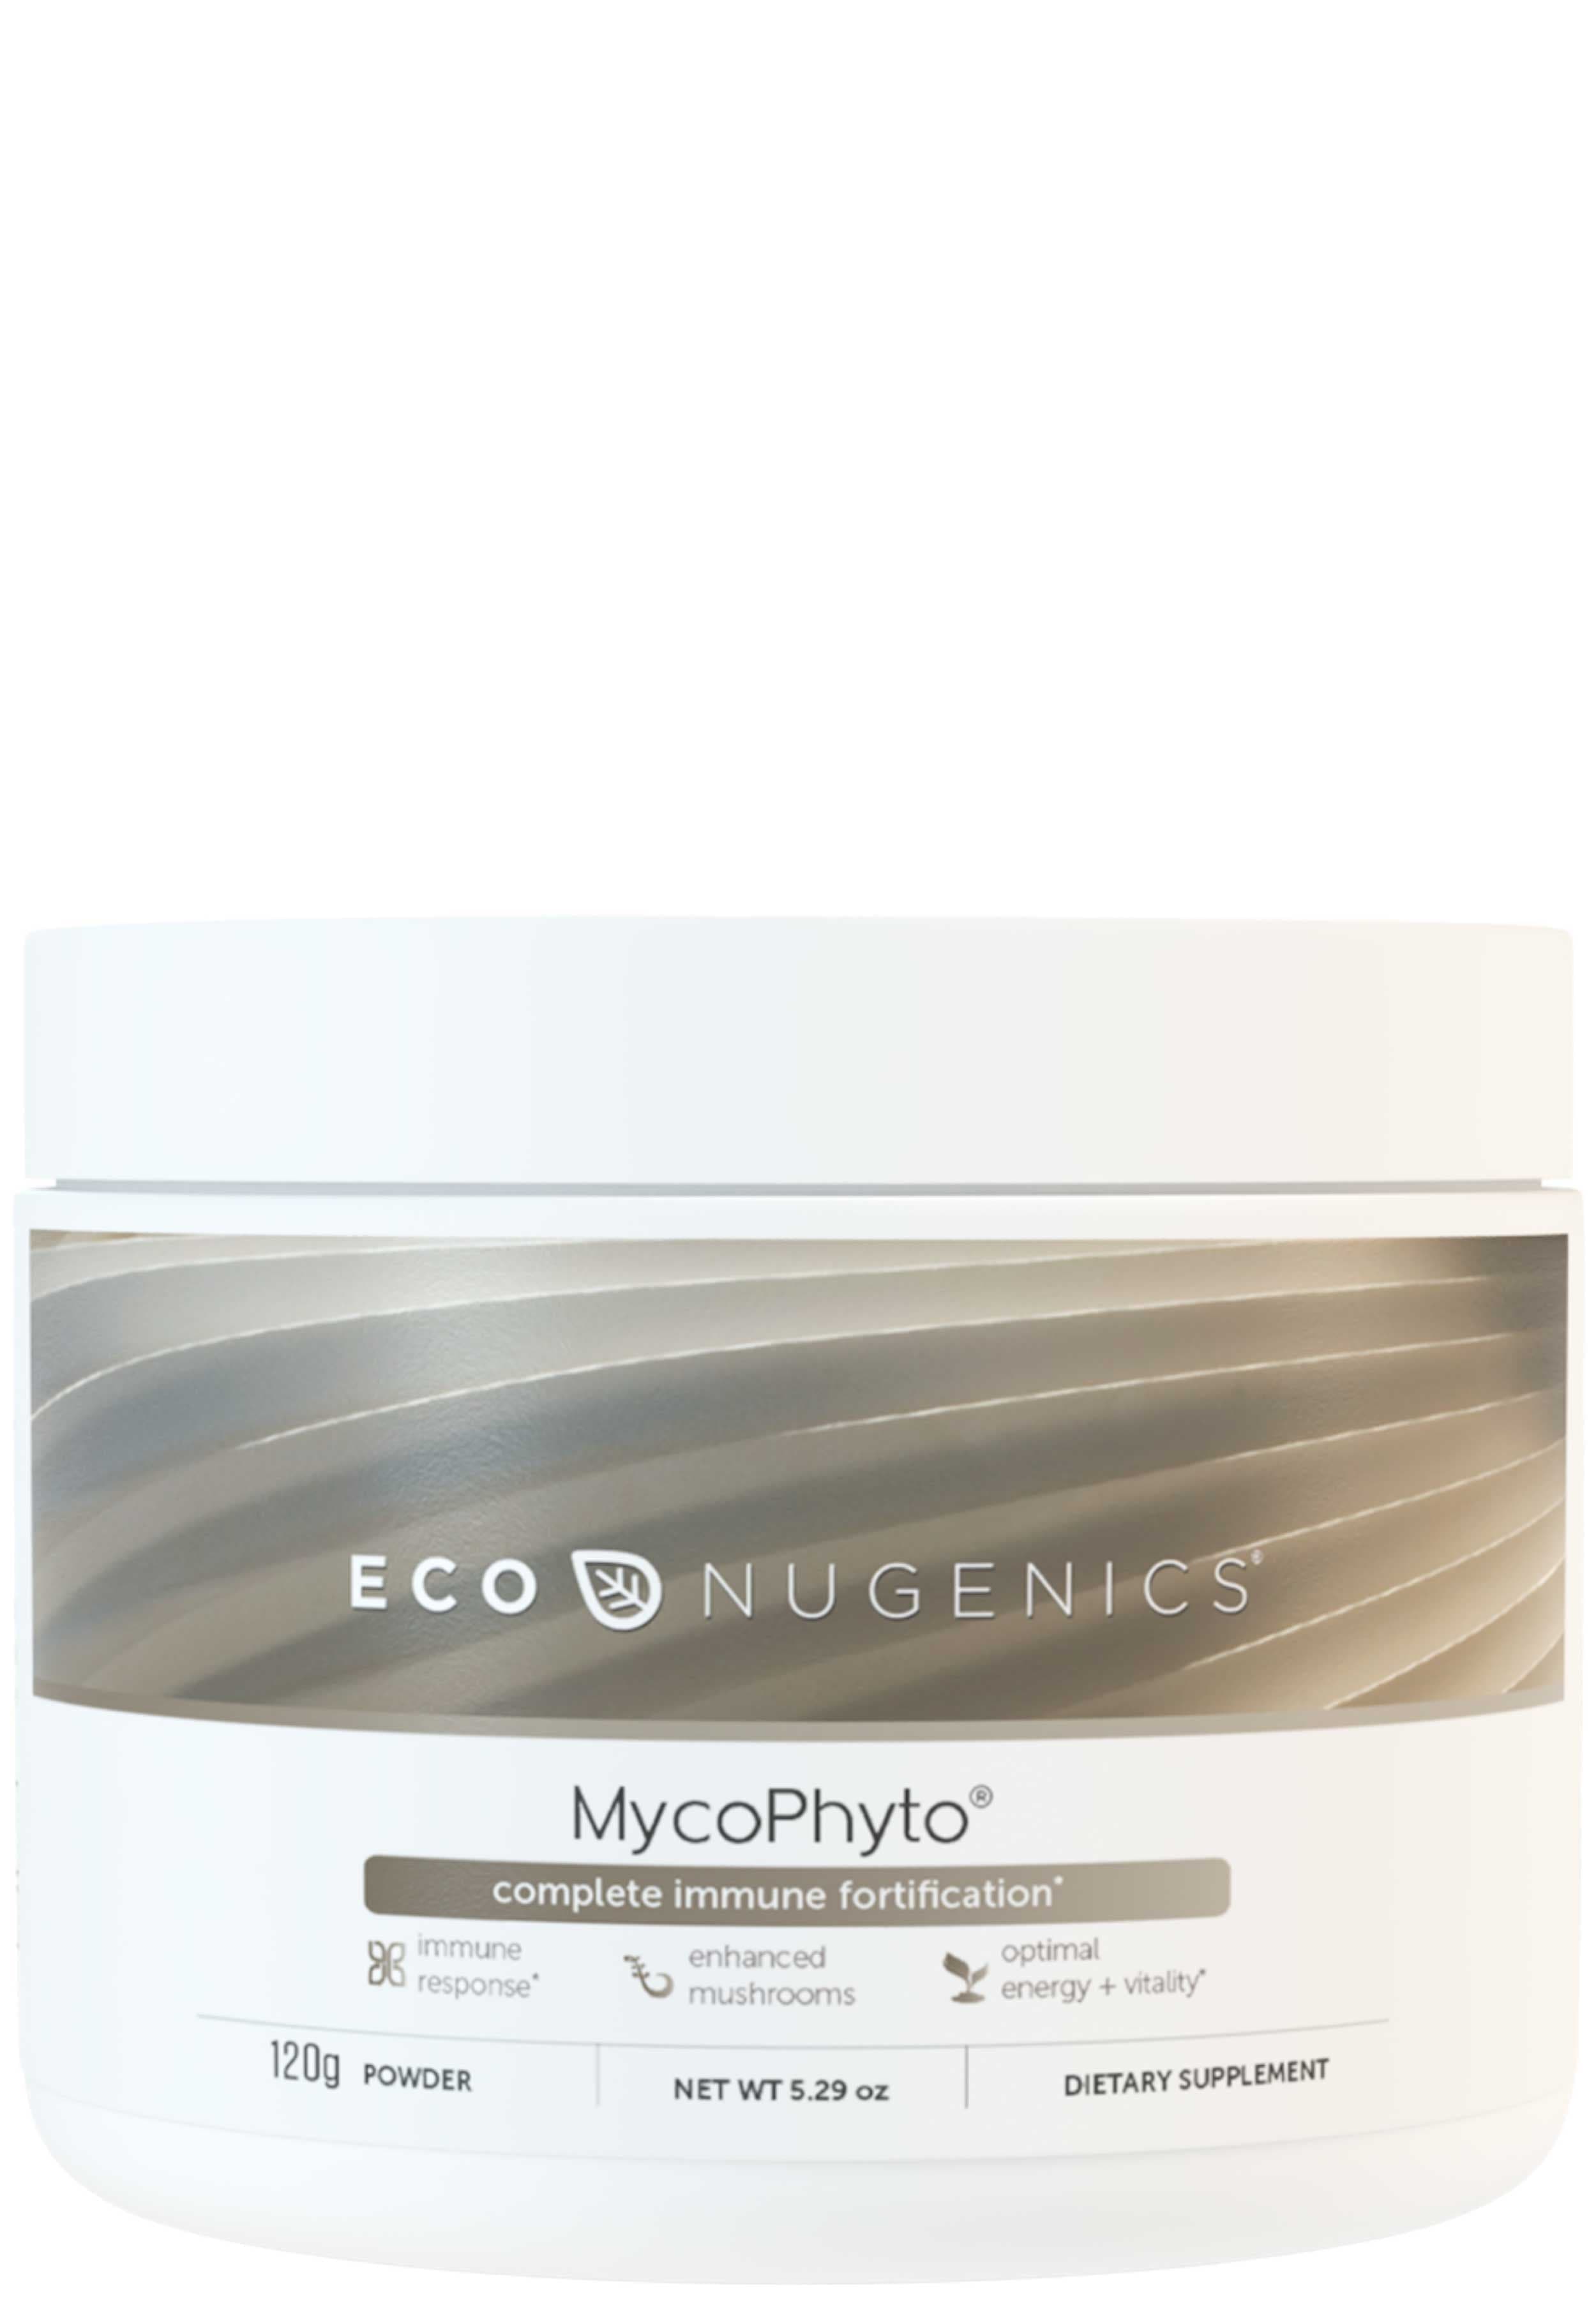 EcoNugenics MycoPhyto Powder